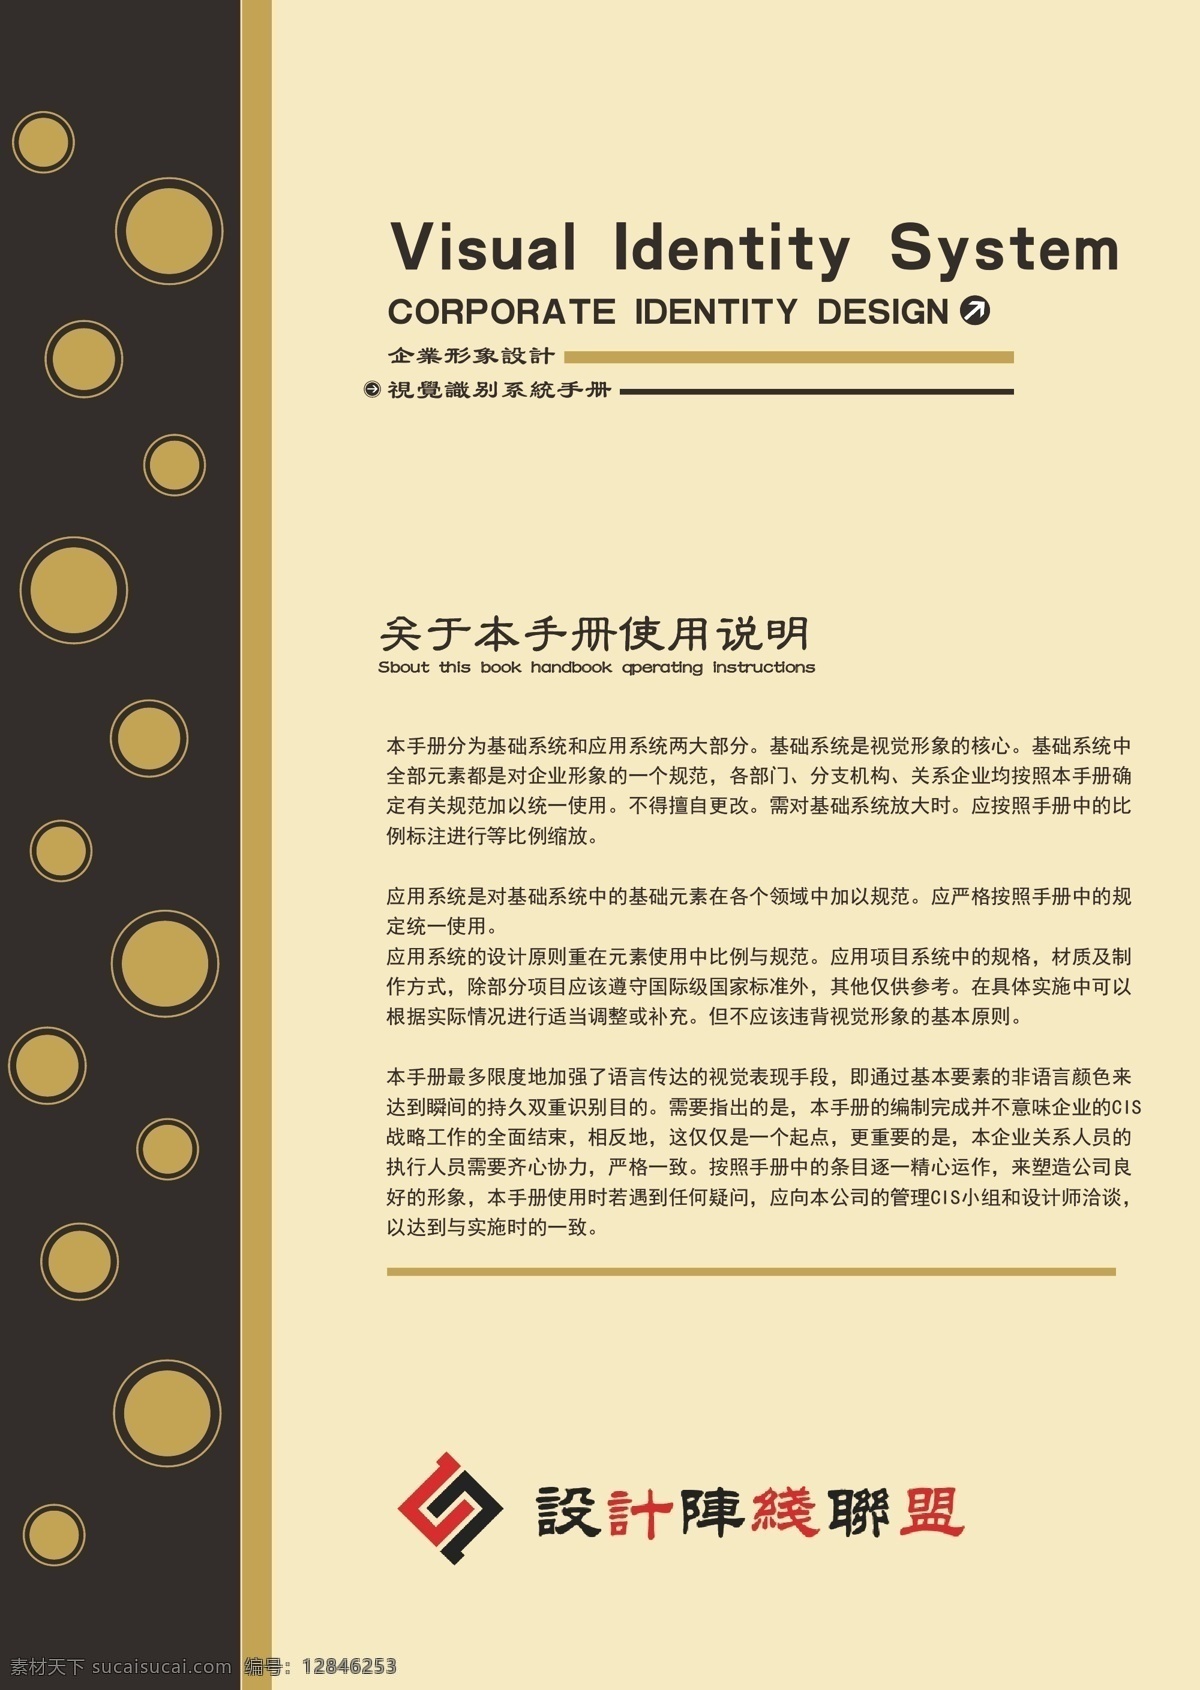 vi vi设计 封面 联盟 应用系统 阵线 手册 使用说明 矢量 vi设计部分 矢量图 建筑家居